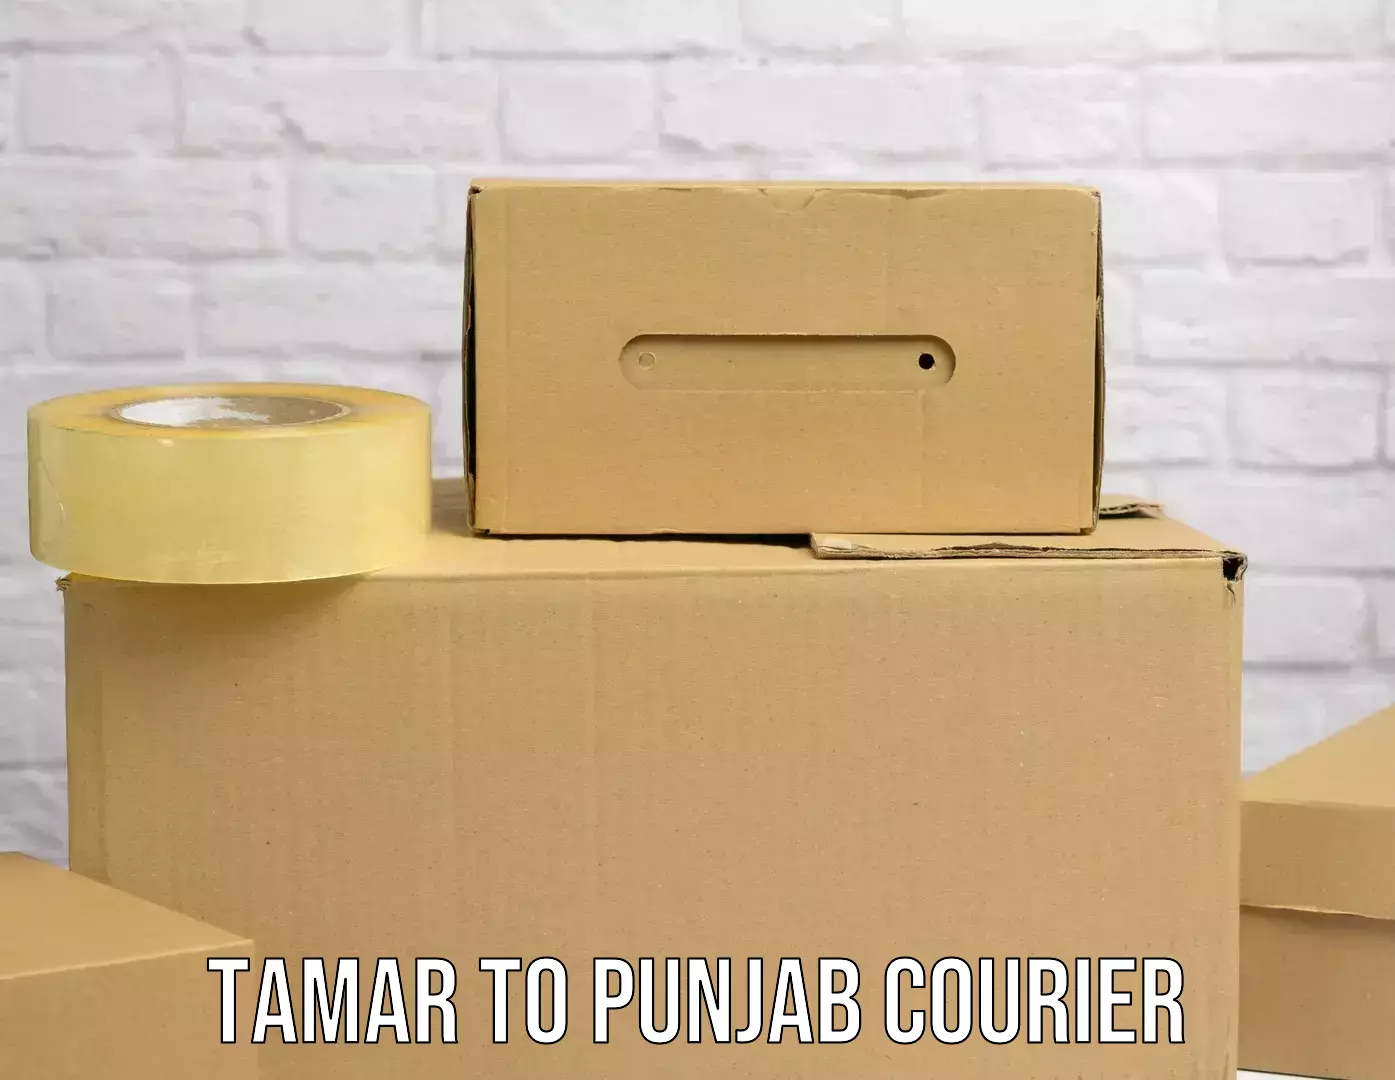 Courier service comparison Tamar to Punjab